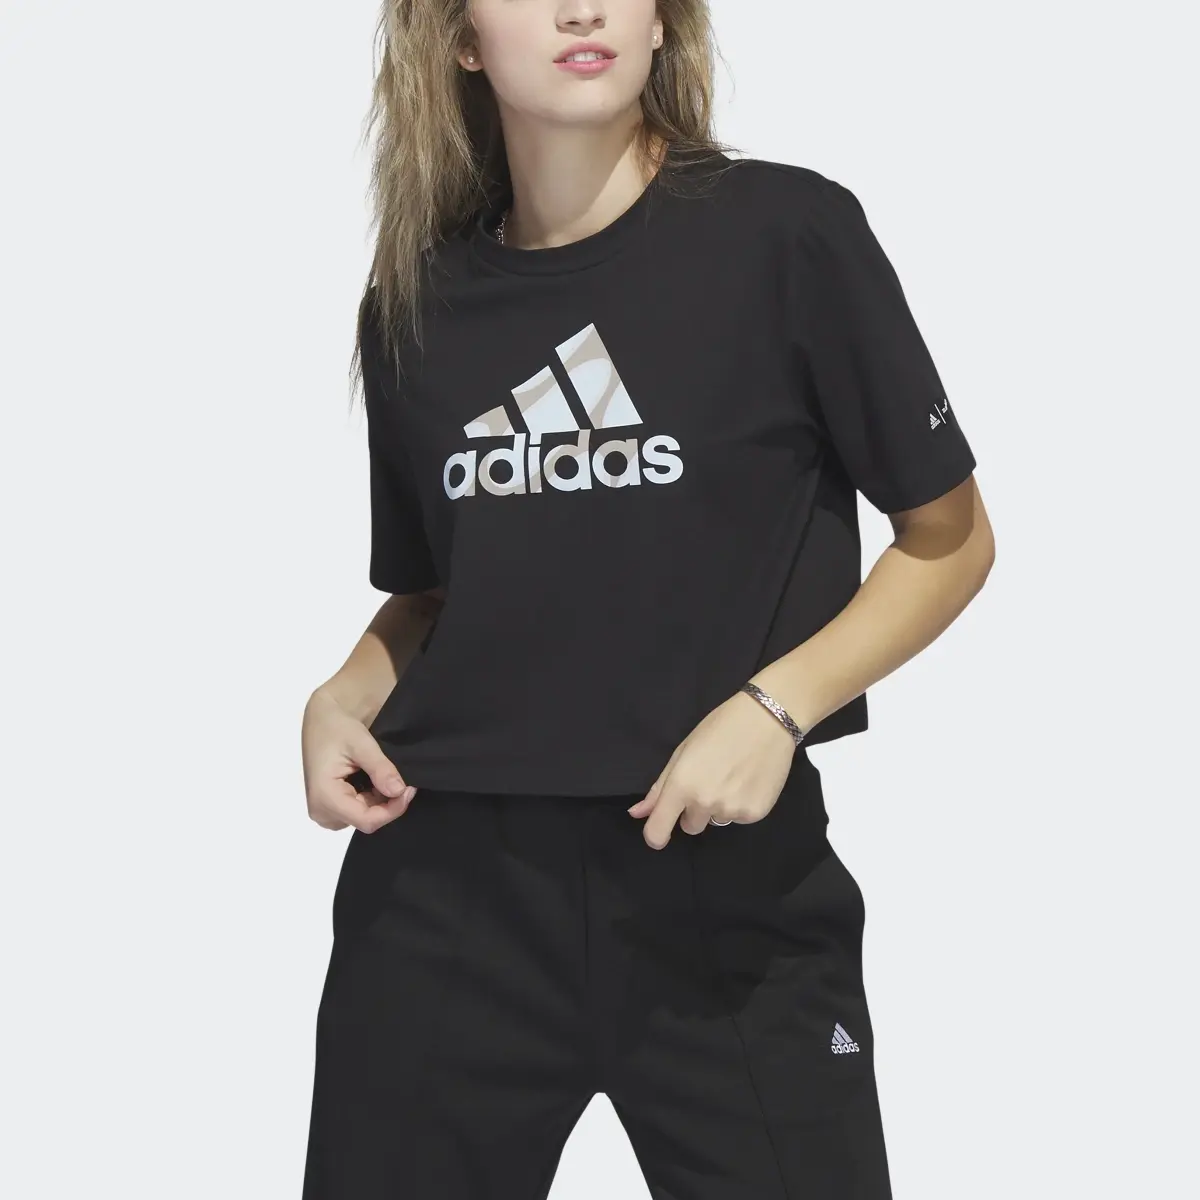 Adidas Marimekko Crop T-Shirt. 1